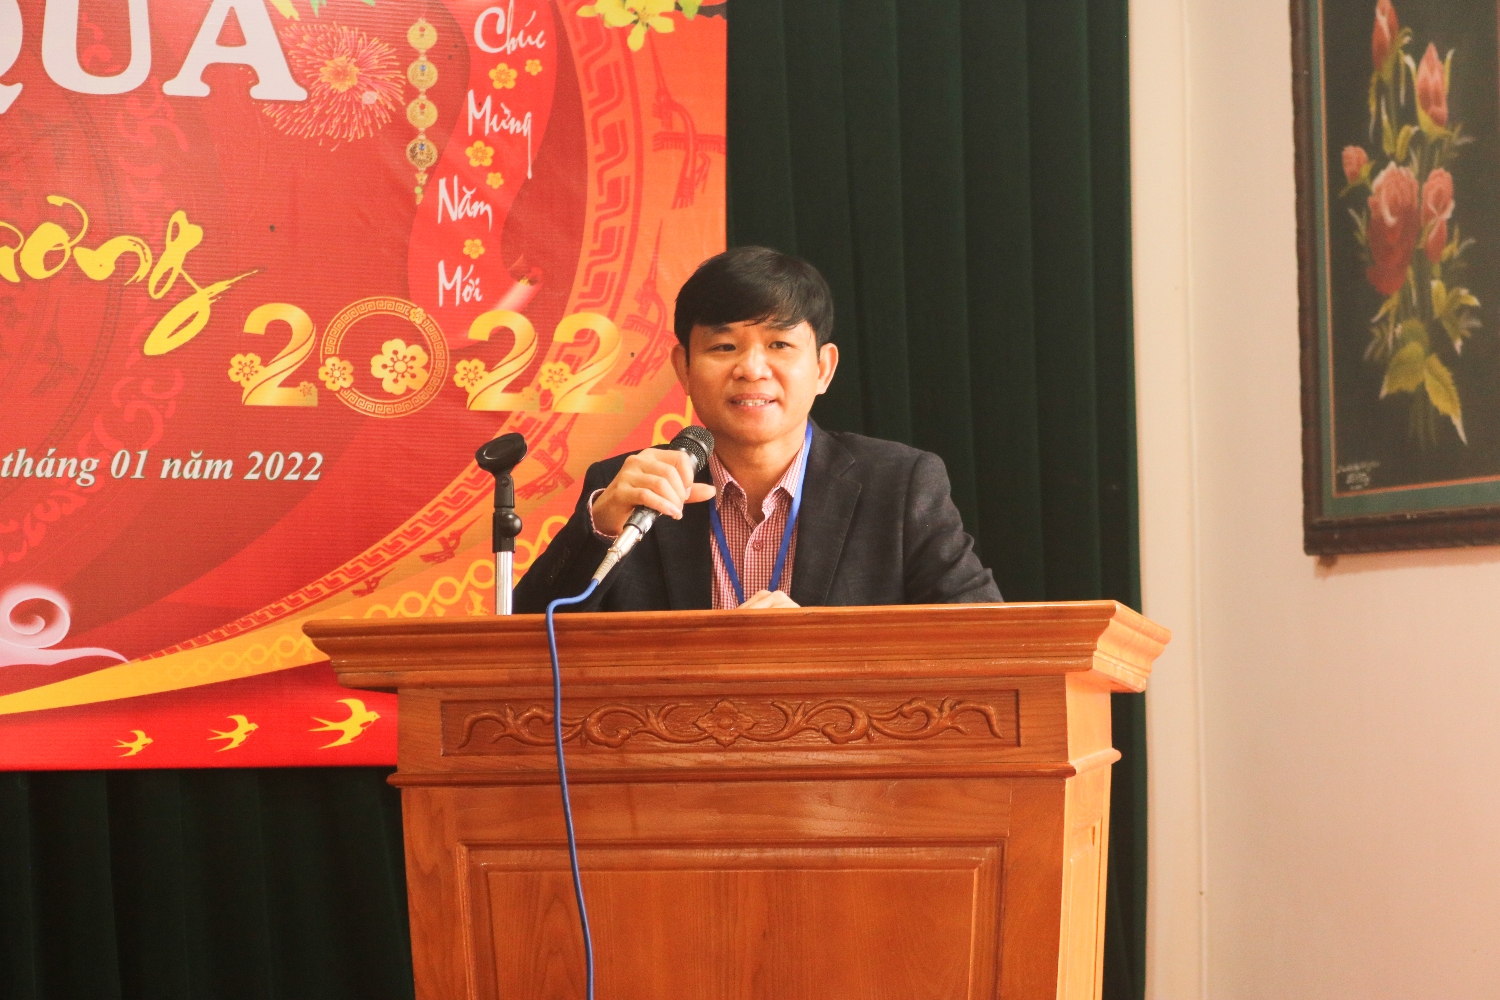 Thầy giáo Nguyễn Hồng Hải - Bí thư Chi bộ - Hiệu trưởng nhà trường phát biểu tại buổi lễ.